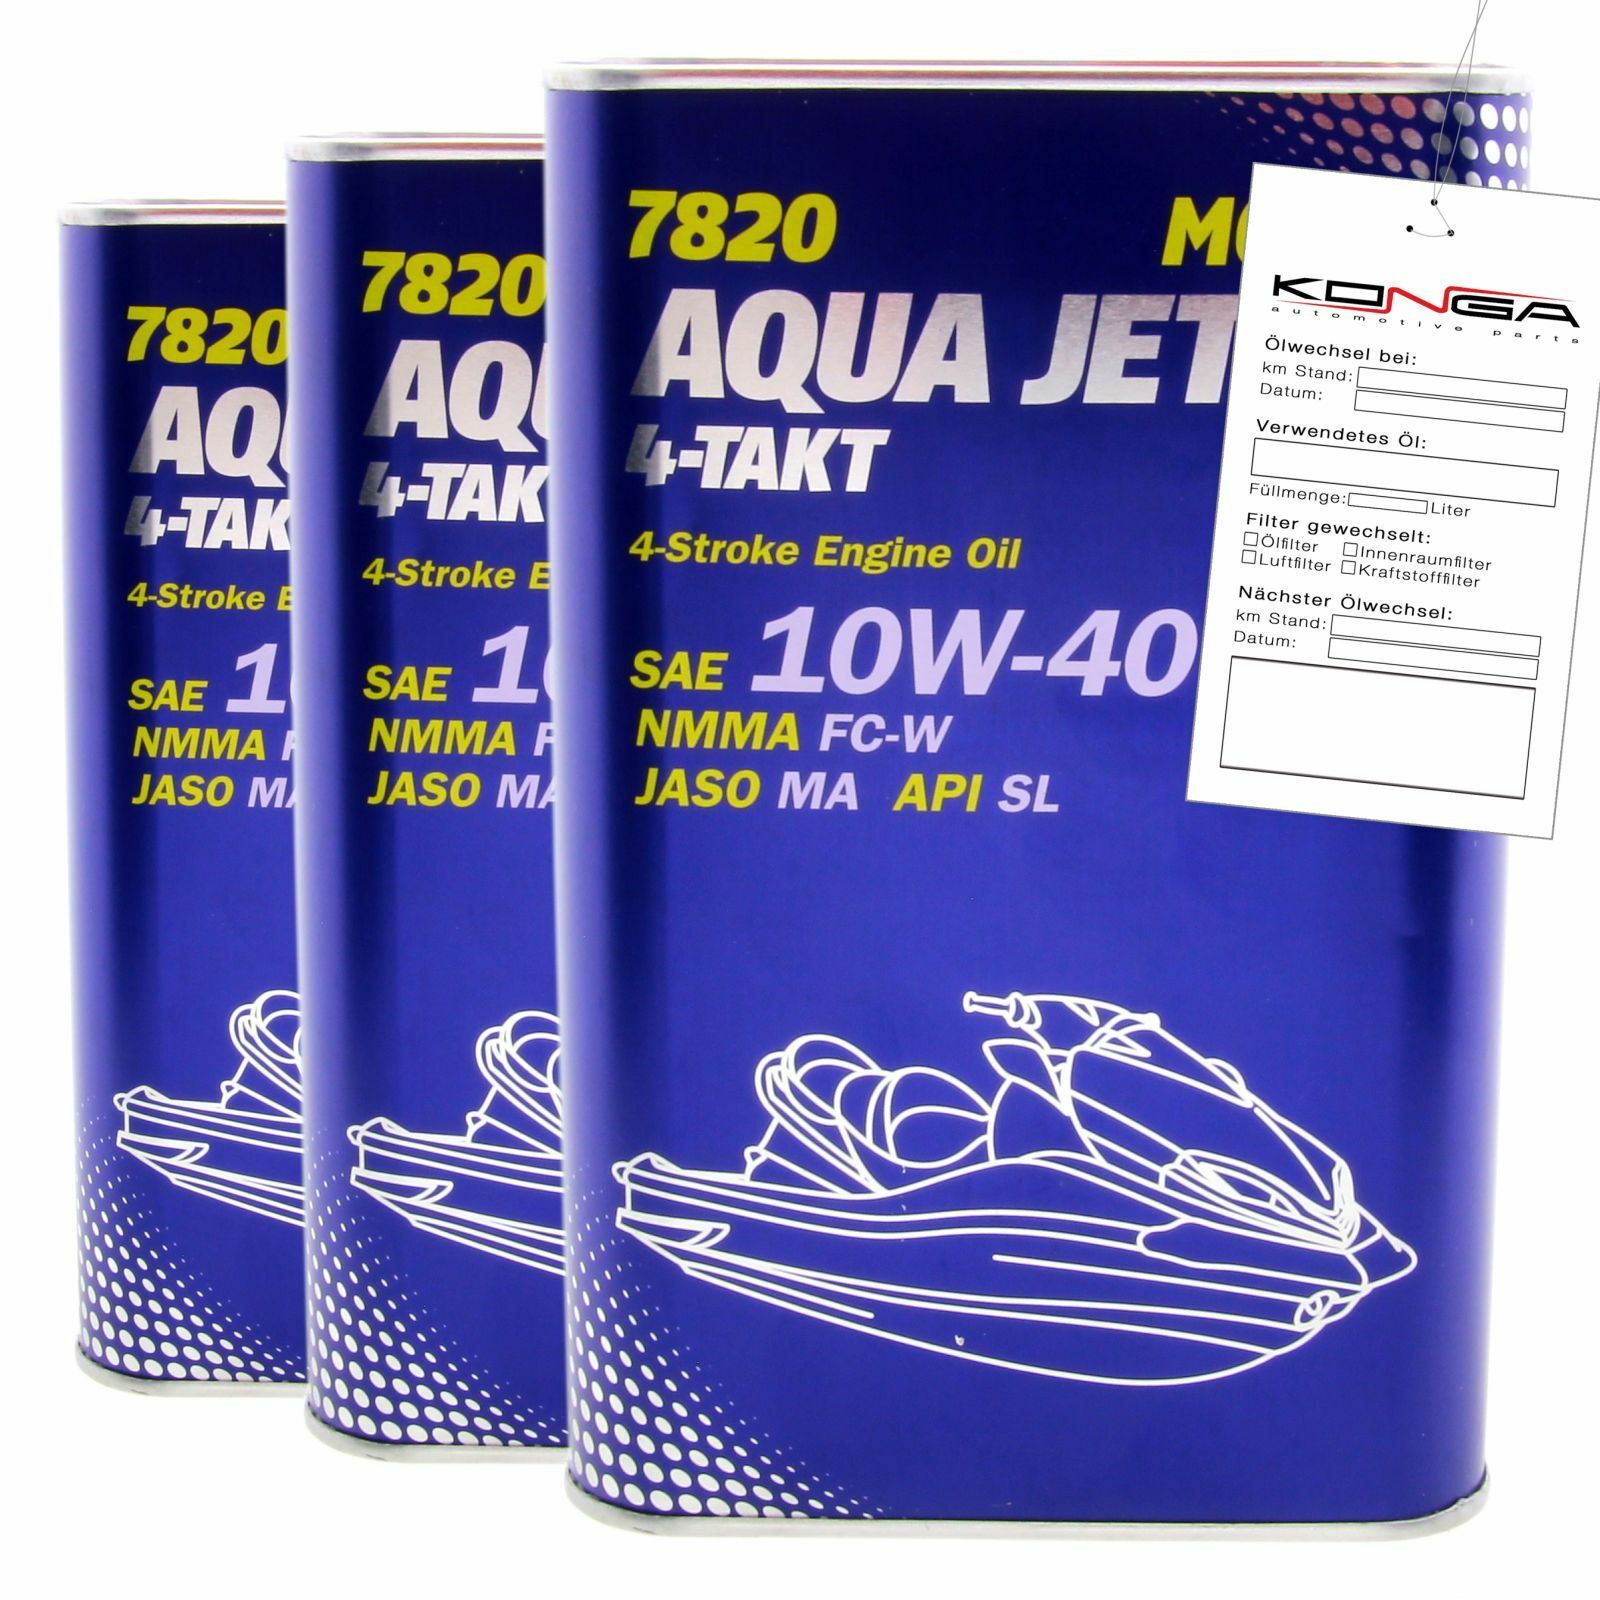 3 Liter (3x1) MANNOL 7820 Aqua Jet 4-Takt 10W-40 API SL Motoröl 10W40